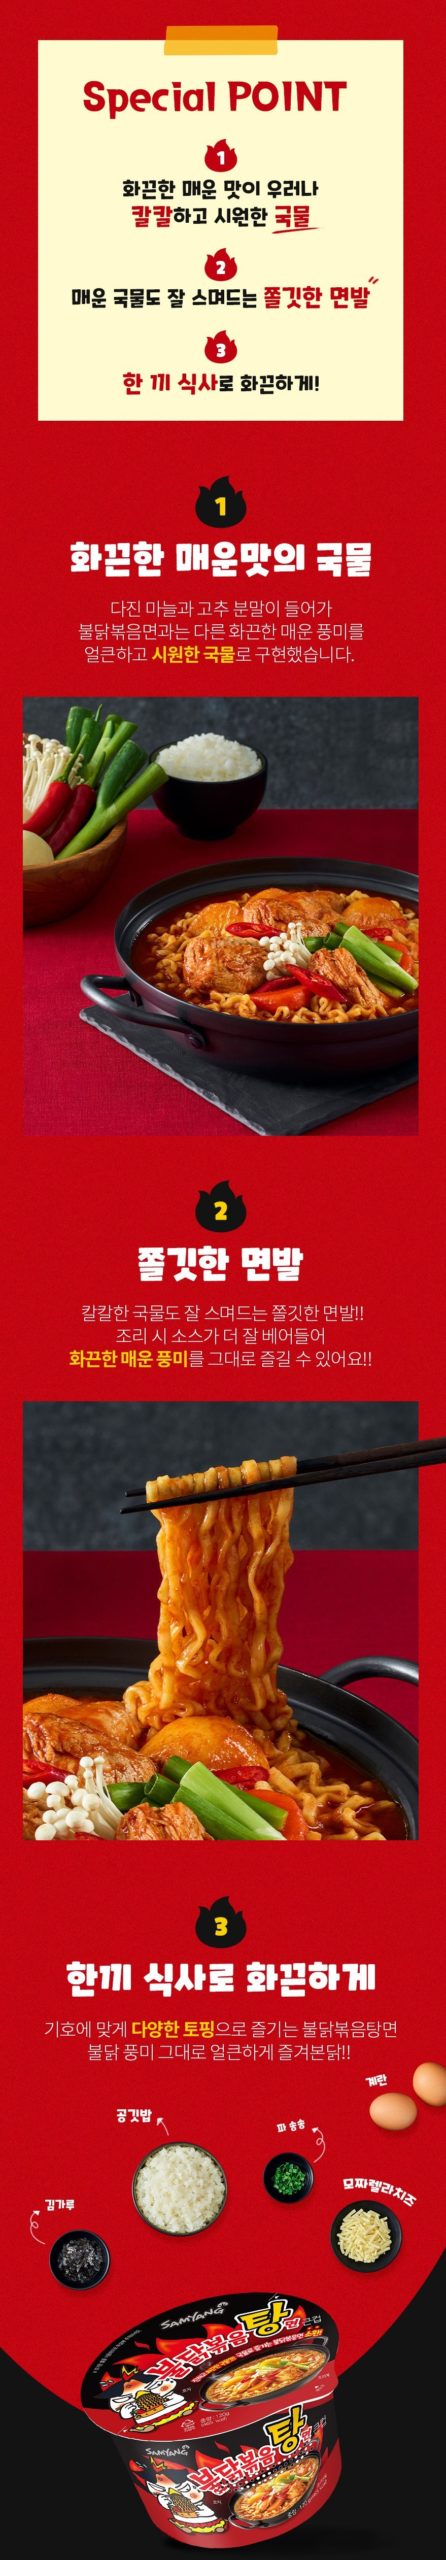 韓國食品-[Samyang] Hot Spicy Instant Soup Noodle 120g